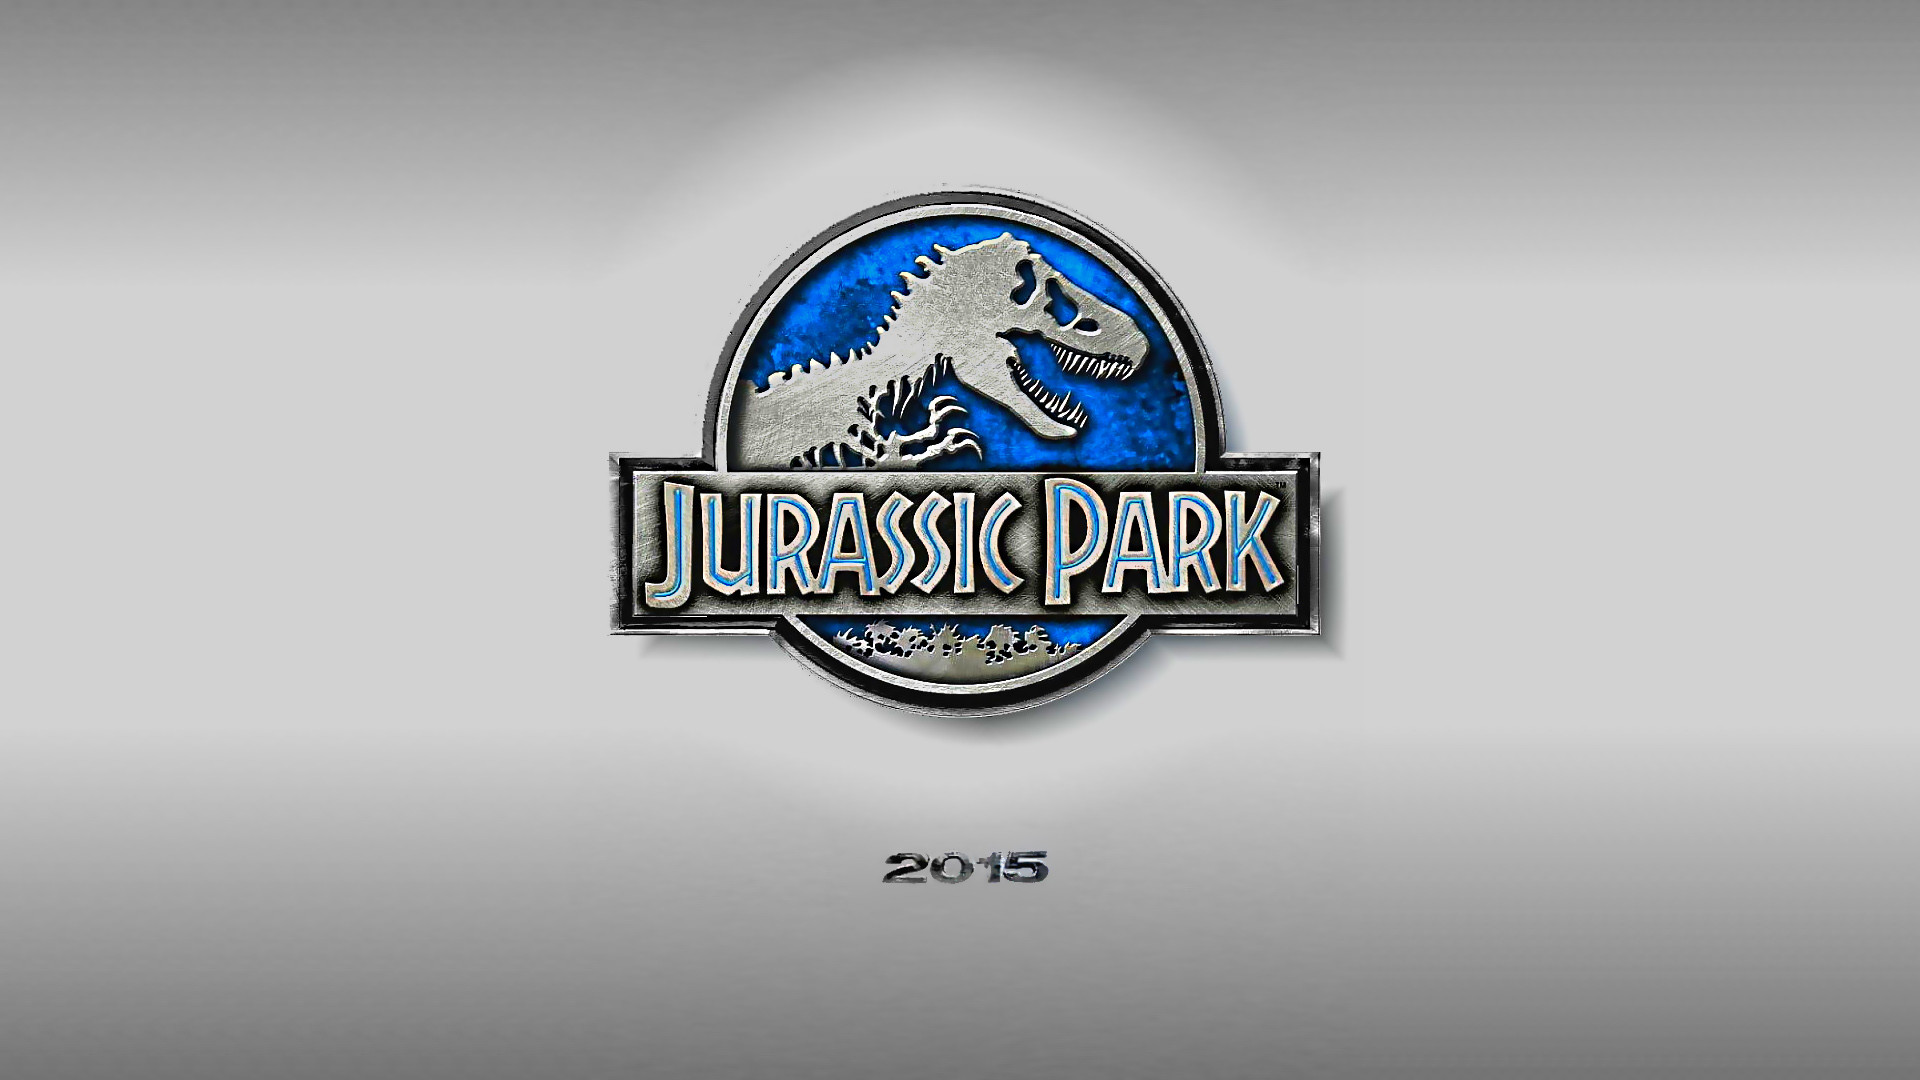 1920x1080 Jurassic Park 4 2015